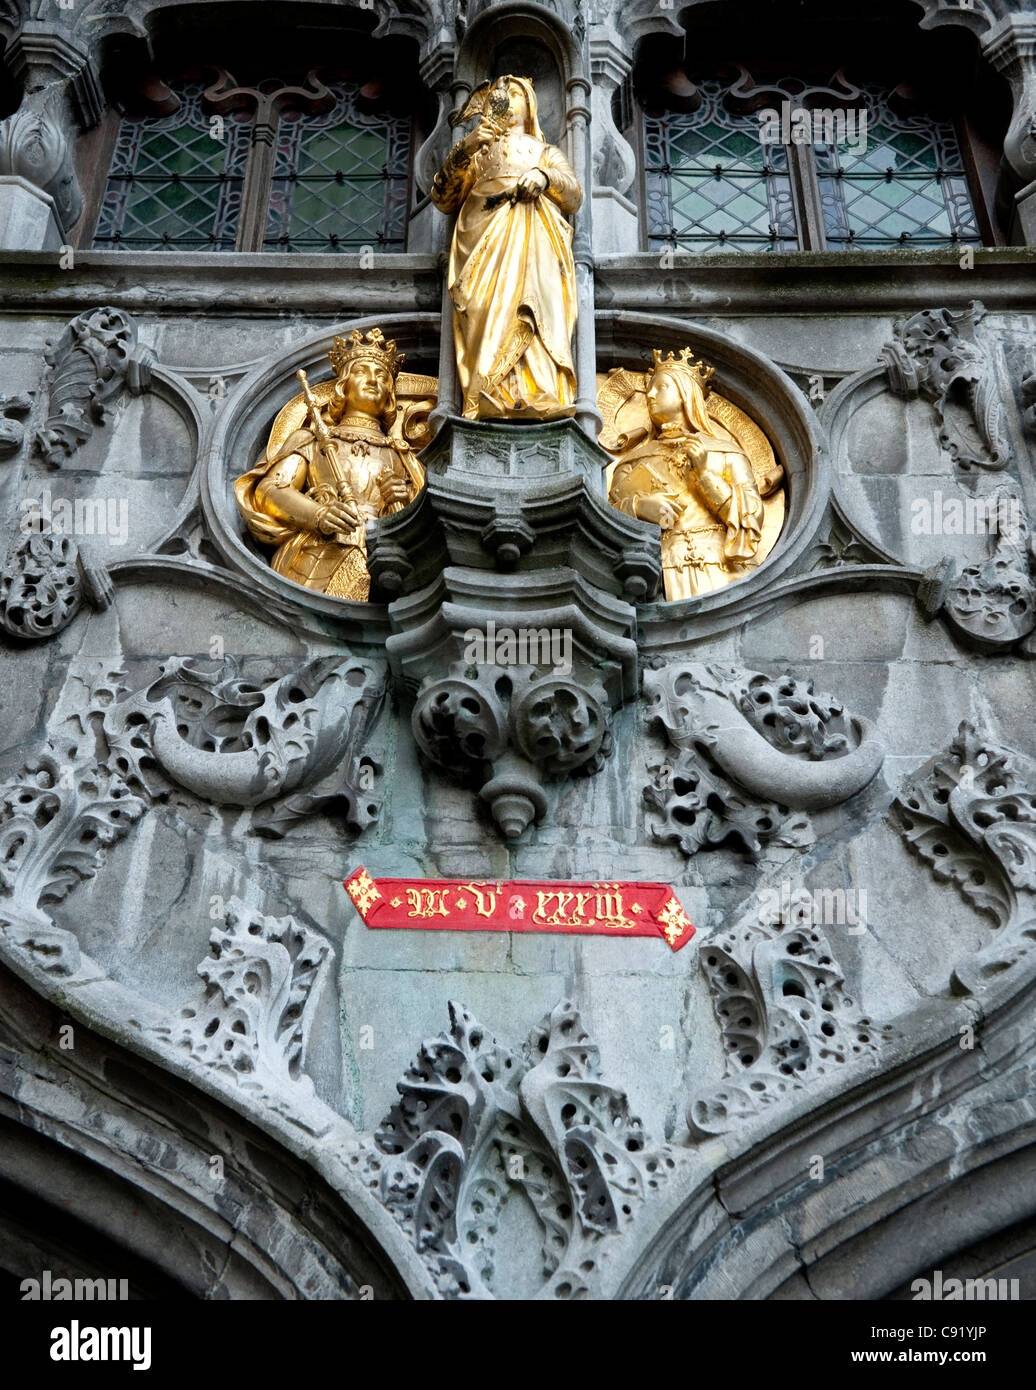 La basilique du Saint-sang Bruges abrite une relique vénérée de Christ a dit être son soi-disant sang recueillies par Joseph de Banque D'Images